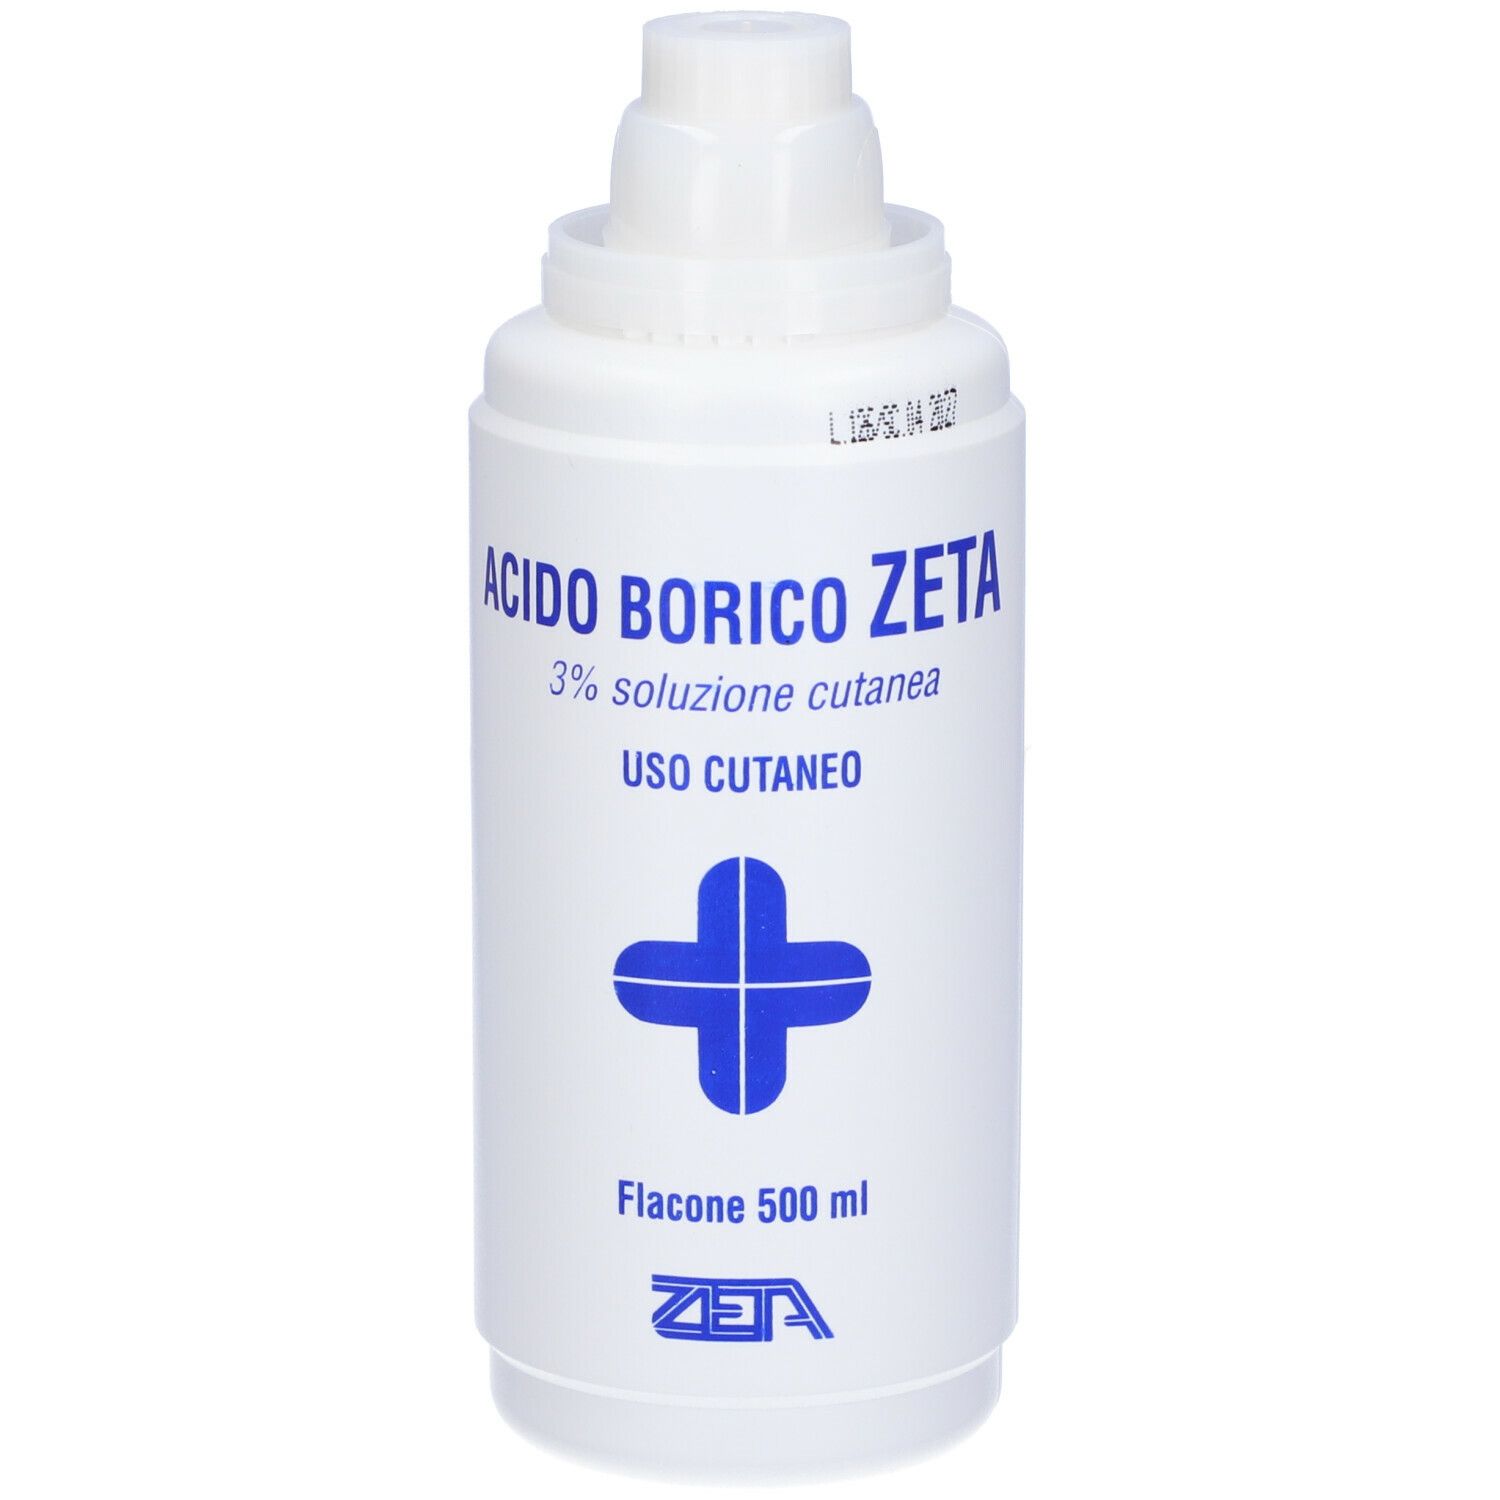 Zeta Acido Borico Zeta 3% Soluzione Cutanea 500 ml